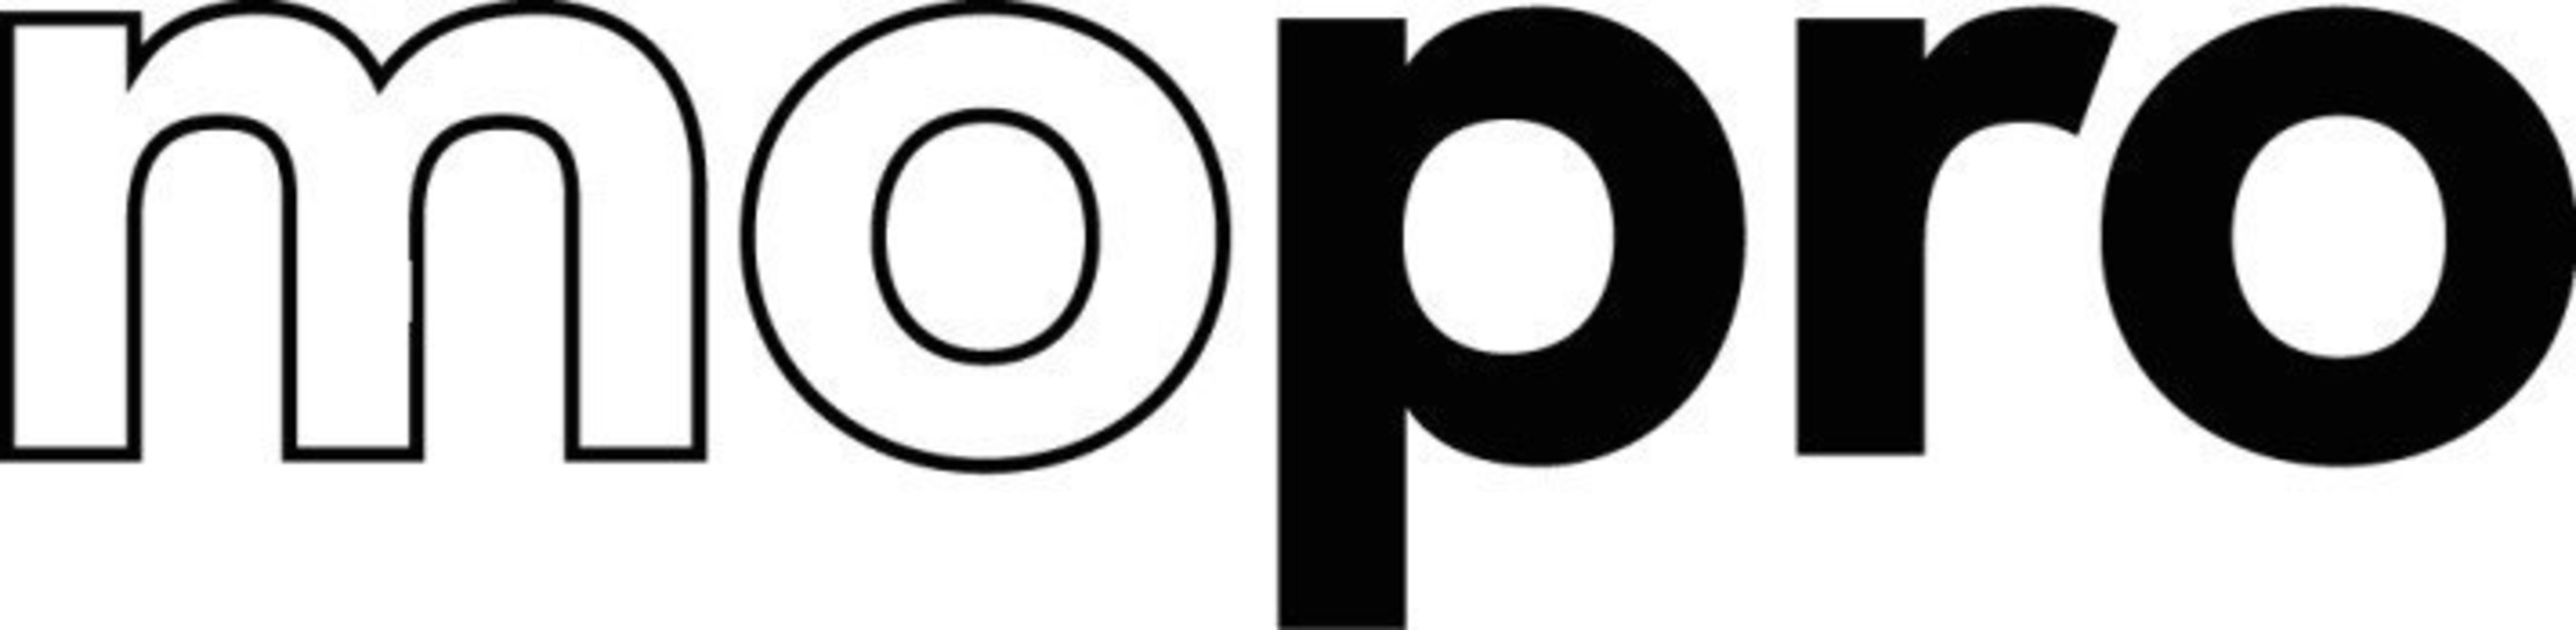 New Mopro logo.